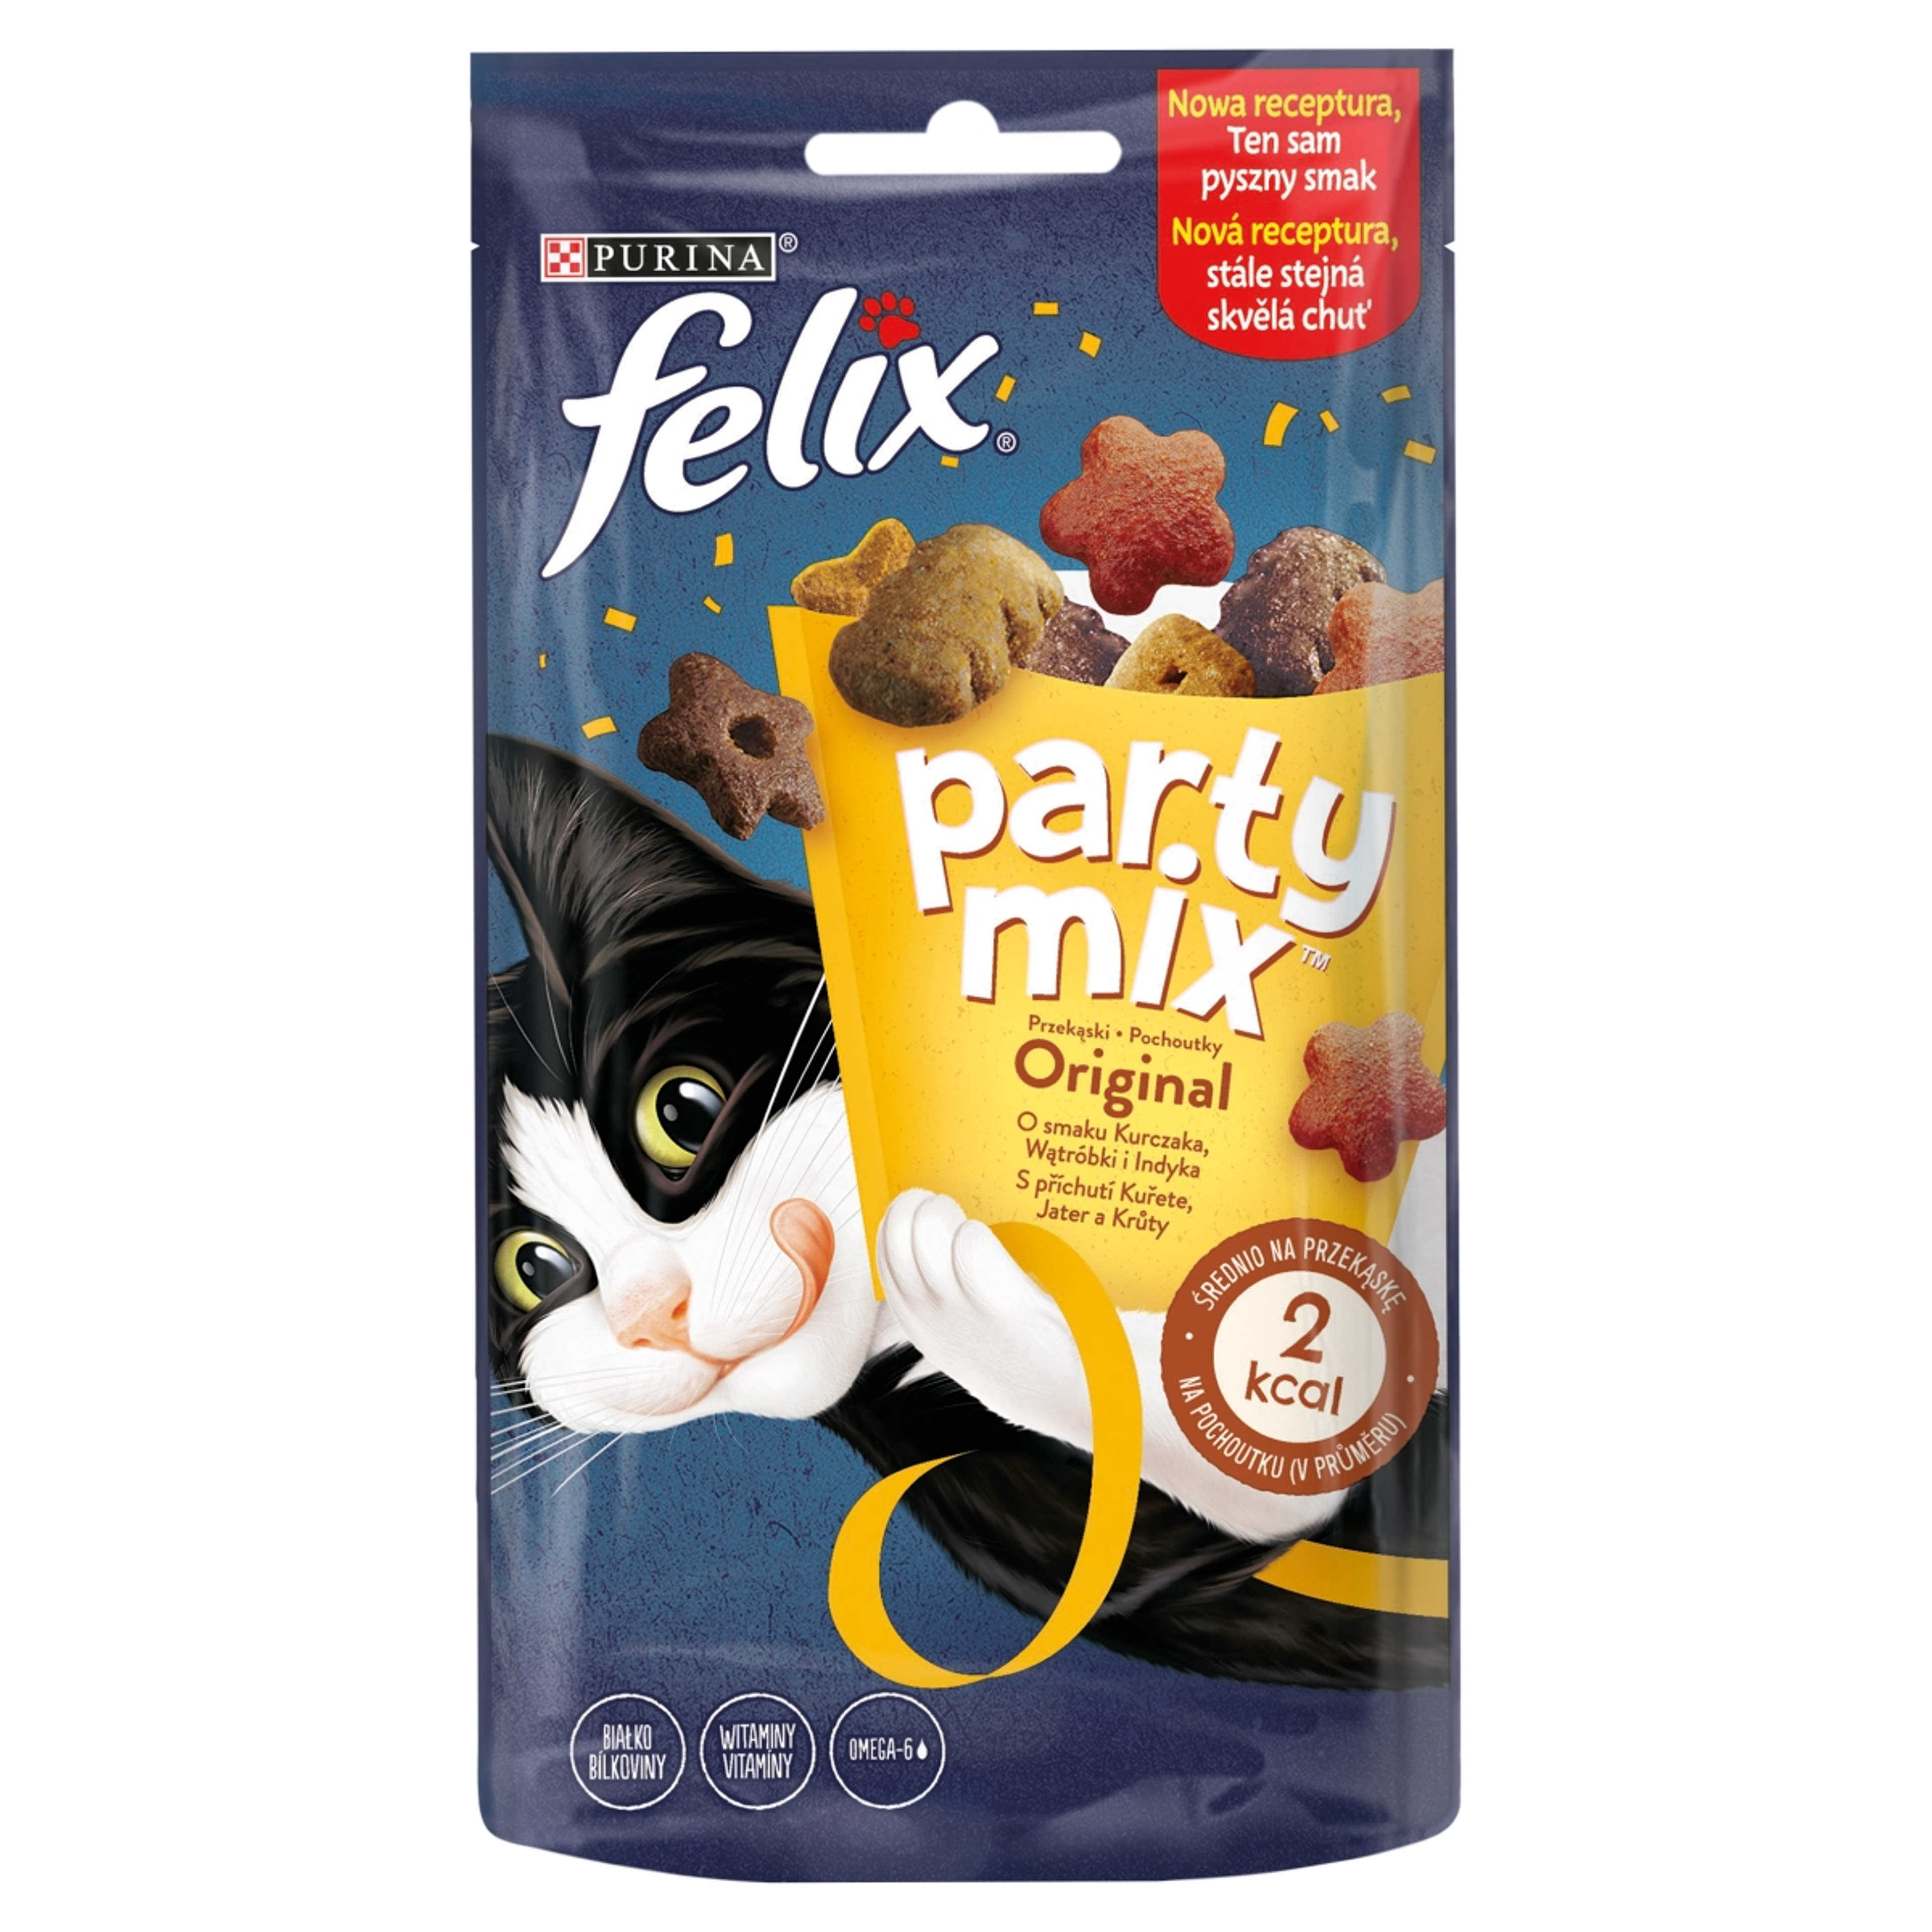 Felix Party Mix felnőtt kiegészítő szárazeledel macskáknak, original mix - 60 g